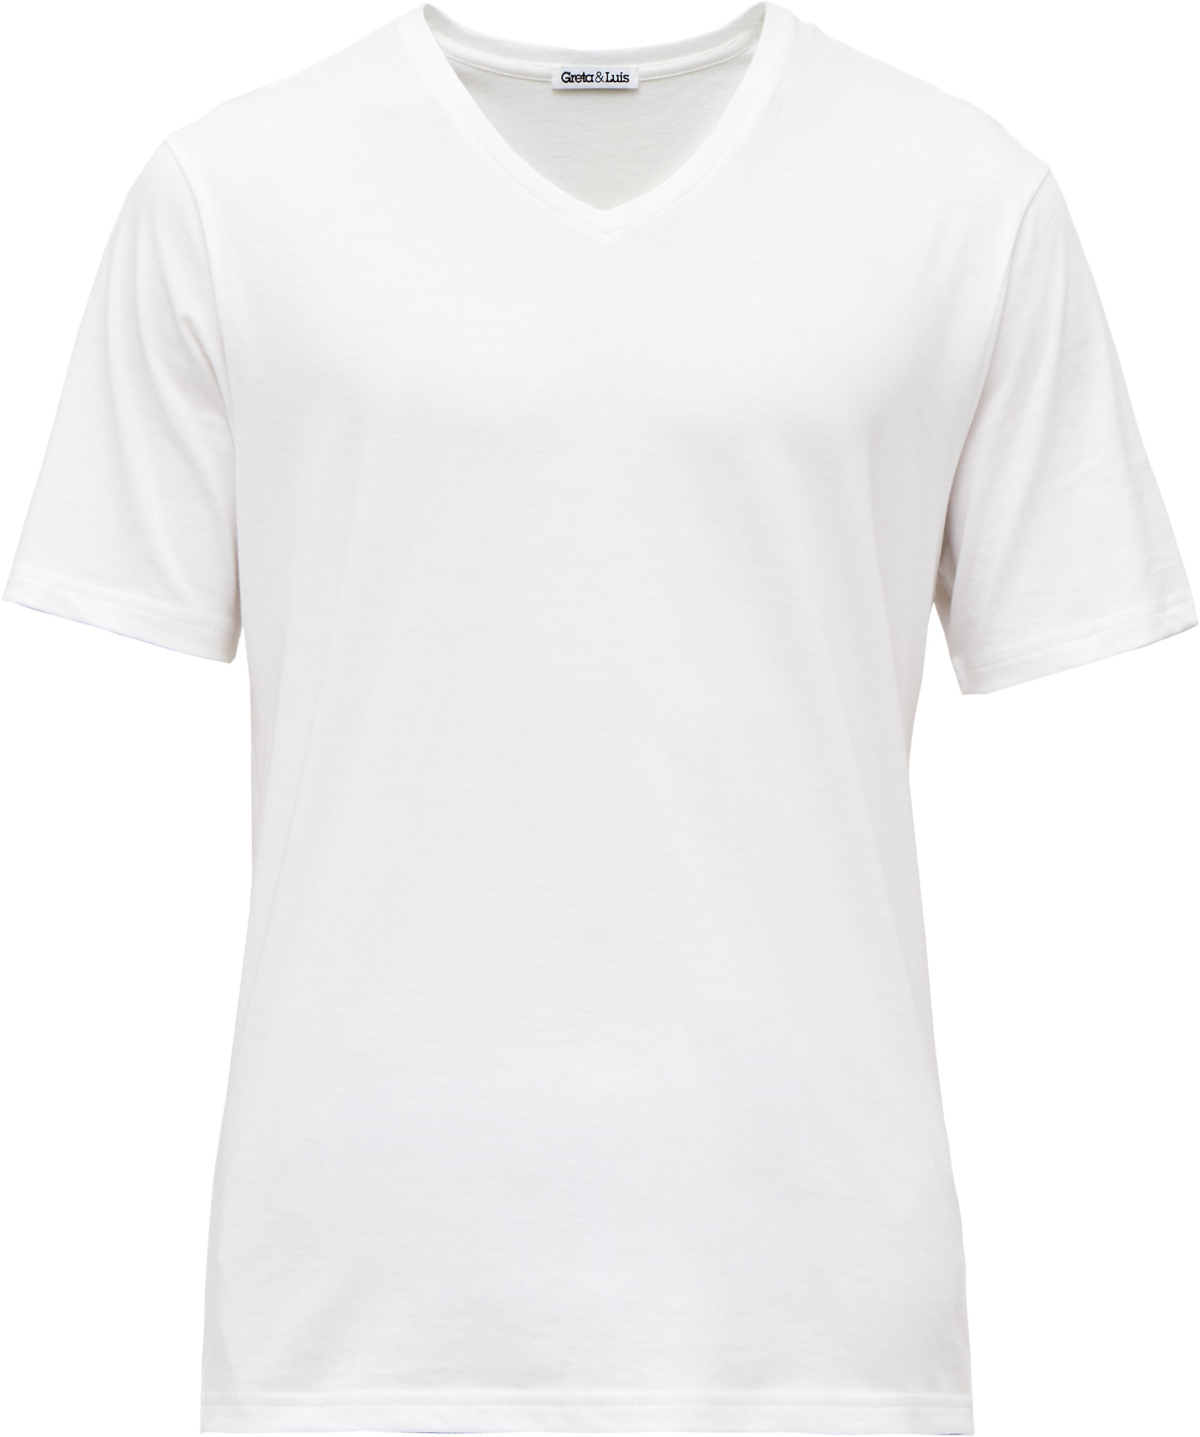 Greta & Luis T-Shirt aus organischer Pima-Baumwolle 439628